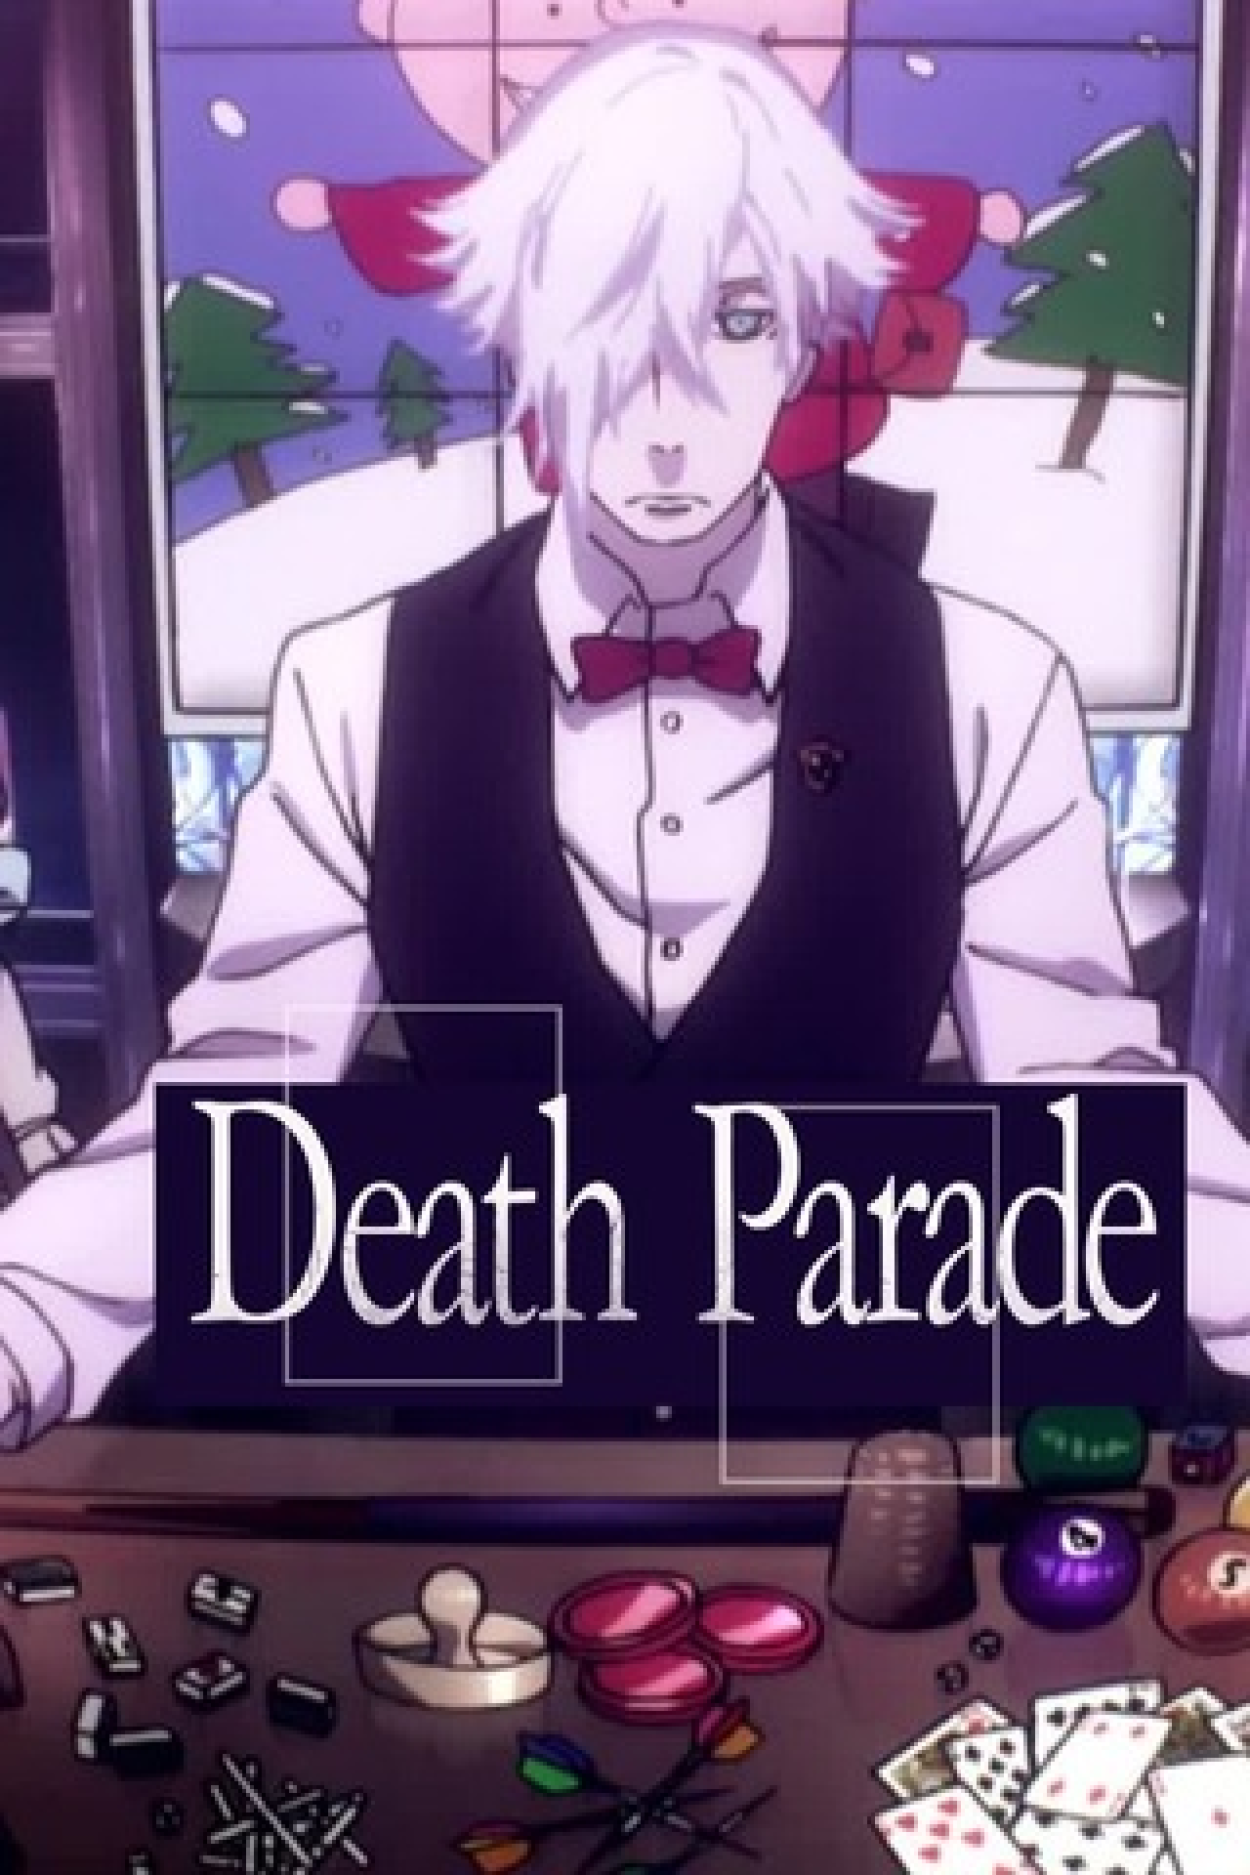 Death Parade – Quiz e Testes de Personalidade